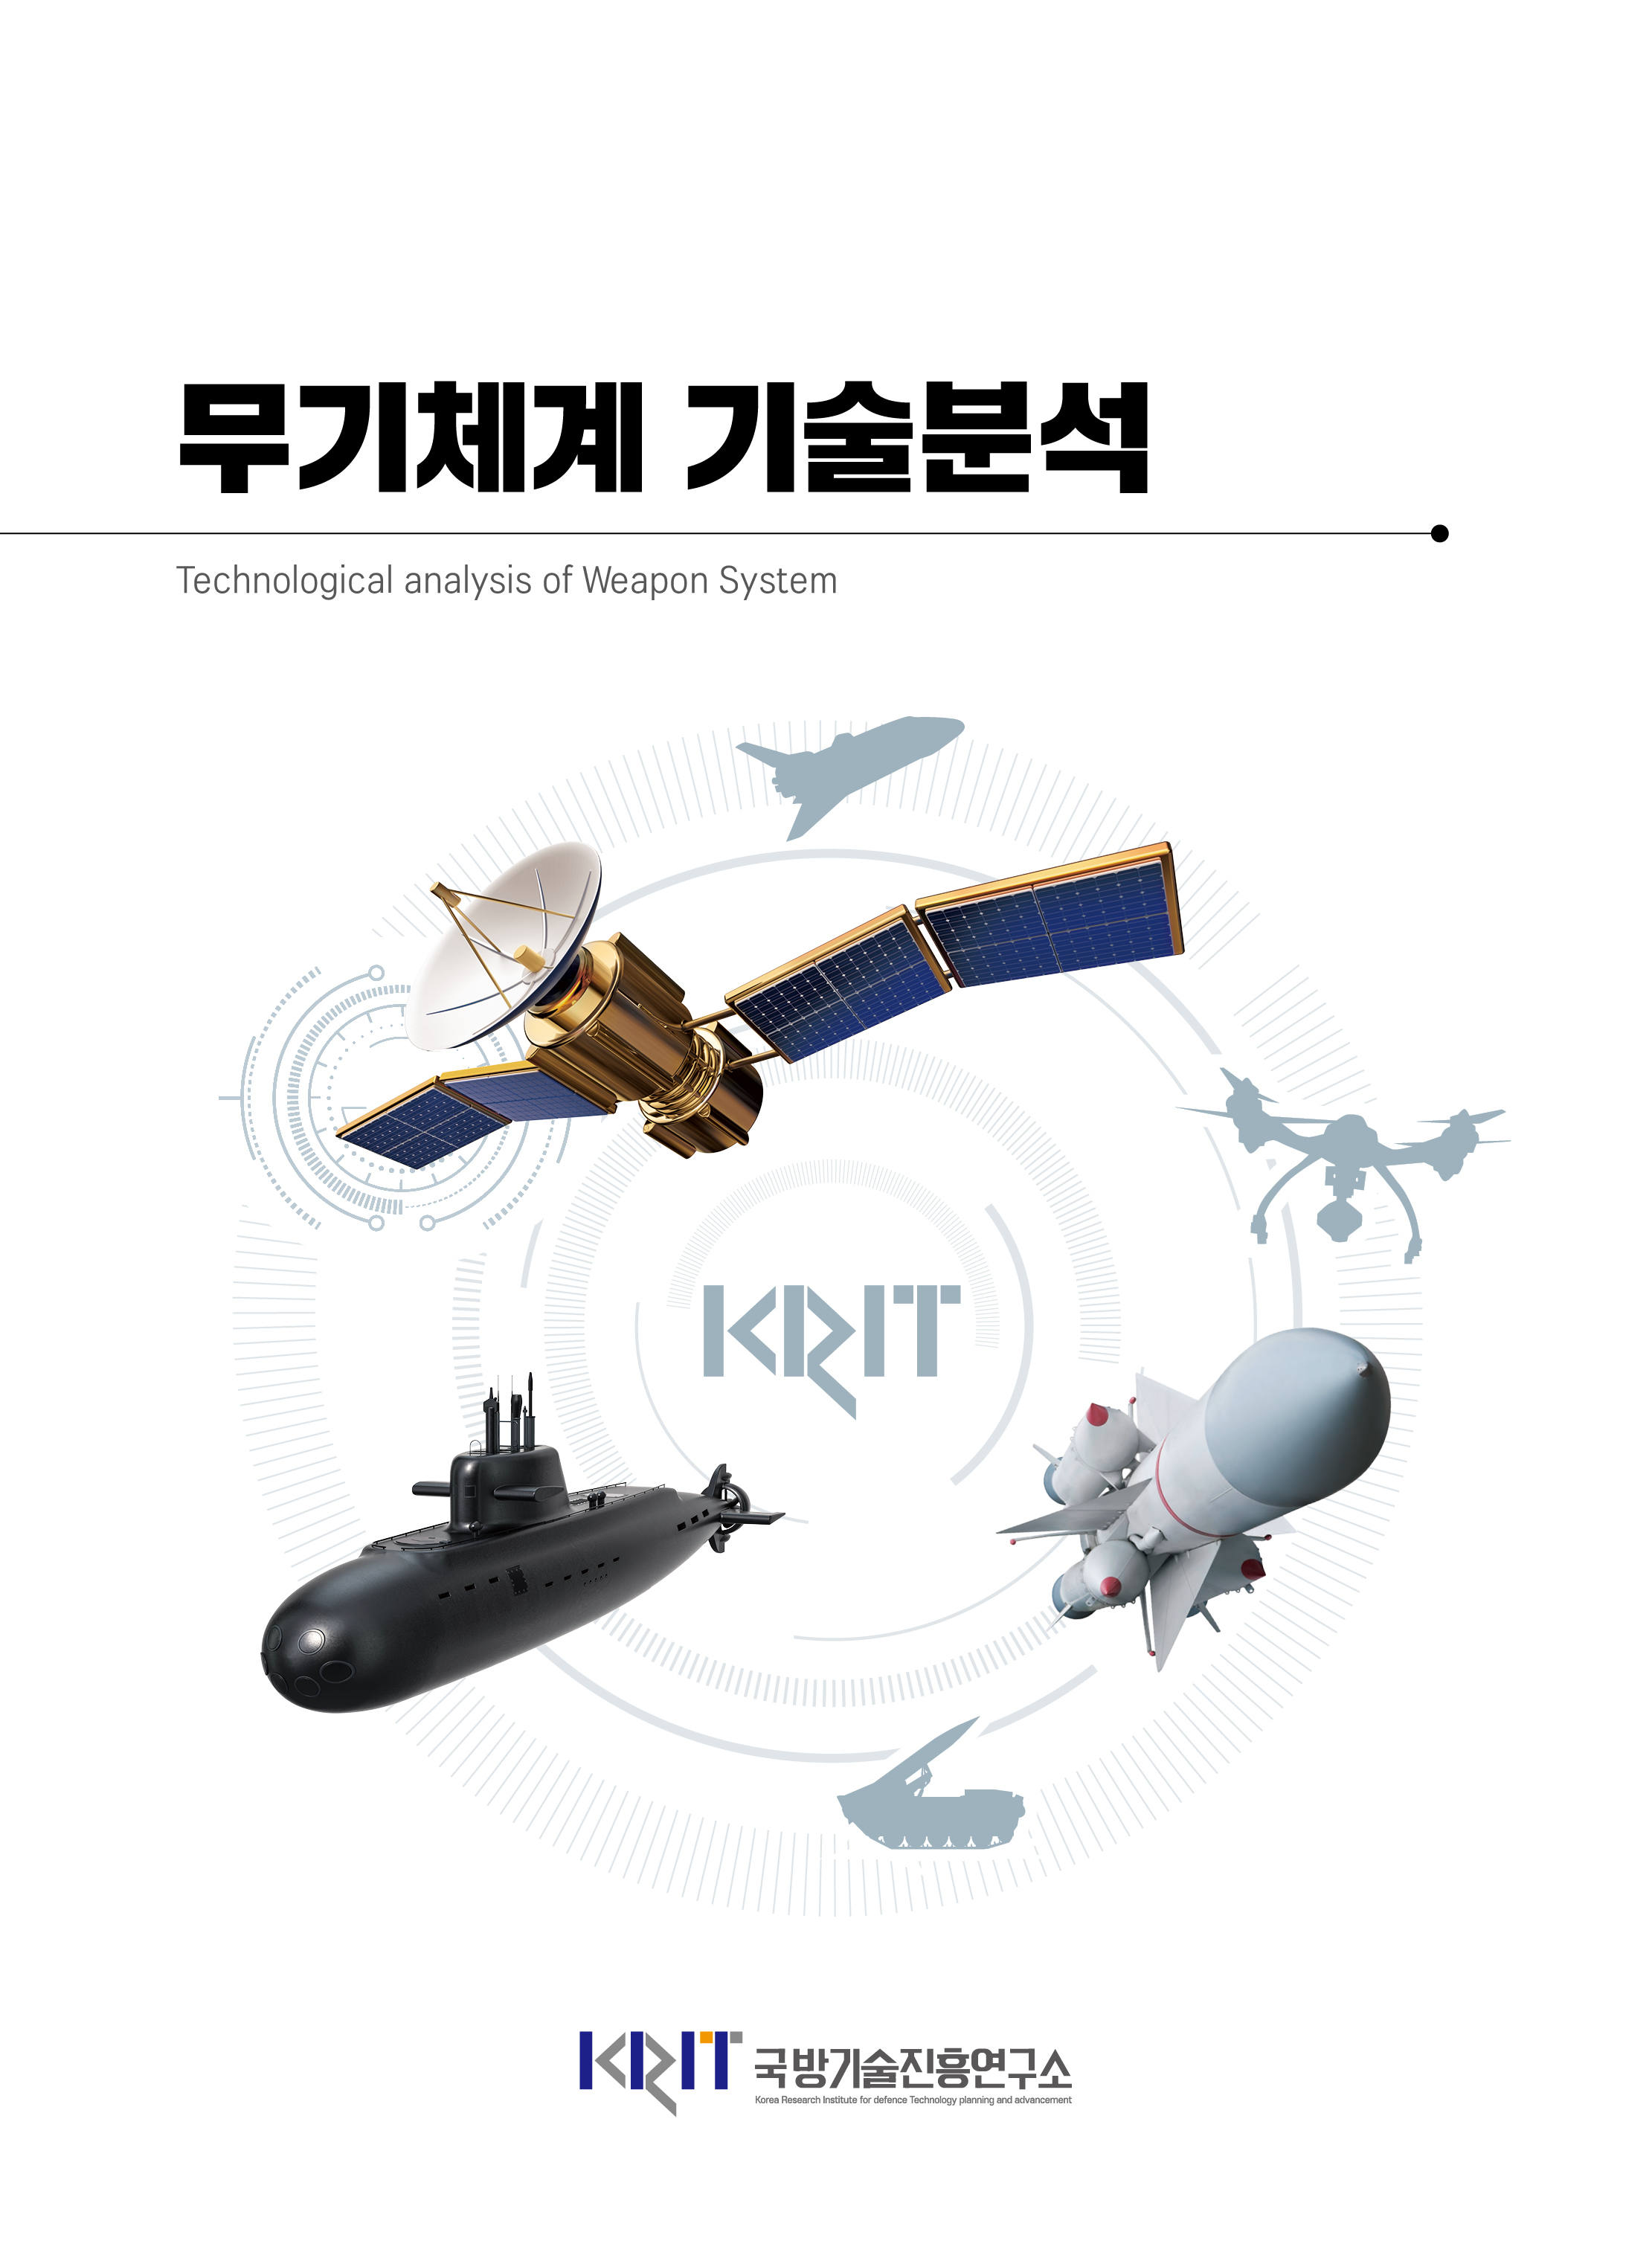 무기체계 기술분석 (8월) 1. 화생방정찰로봇의 국내외 연구개발 동향